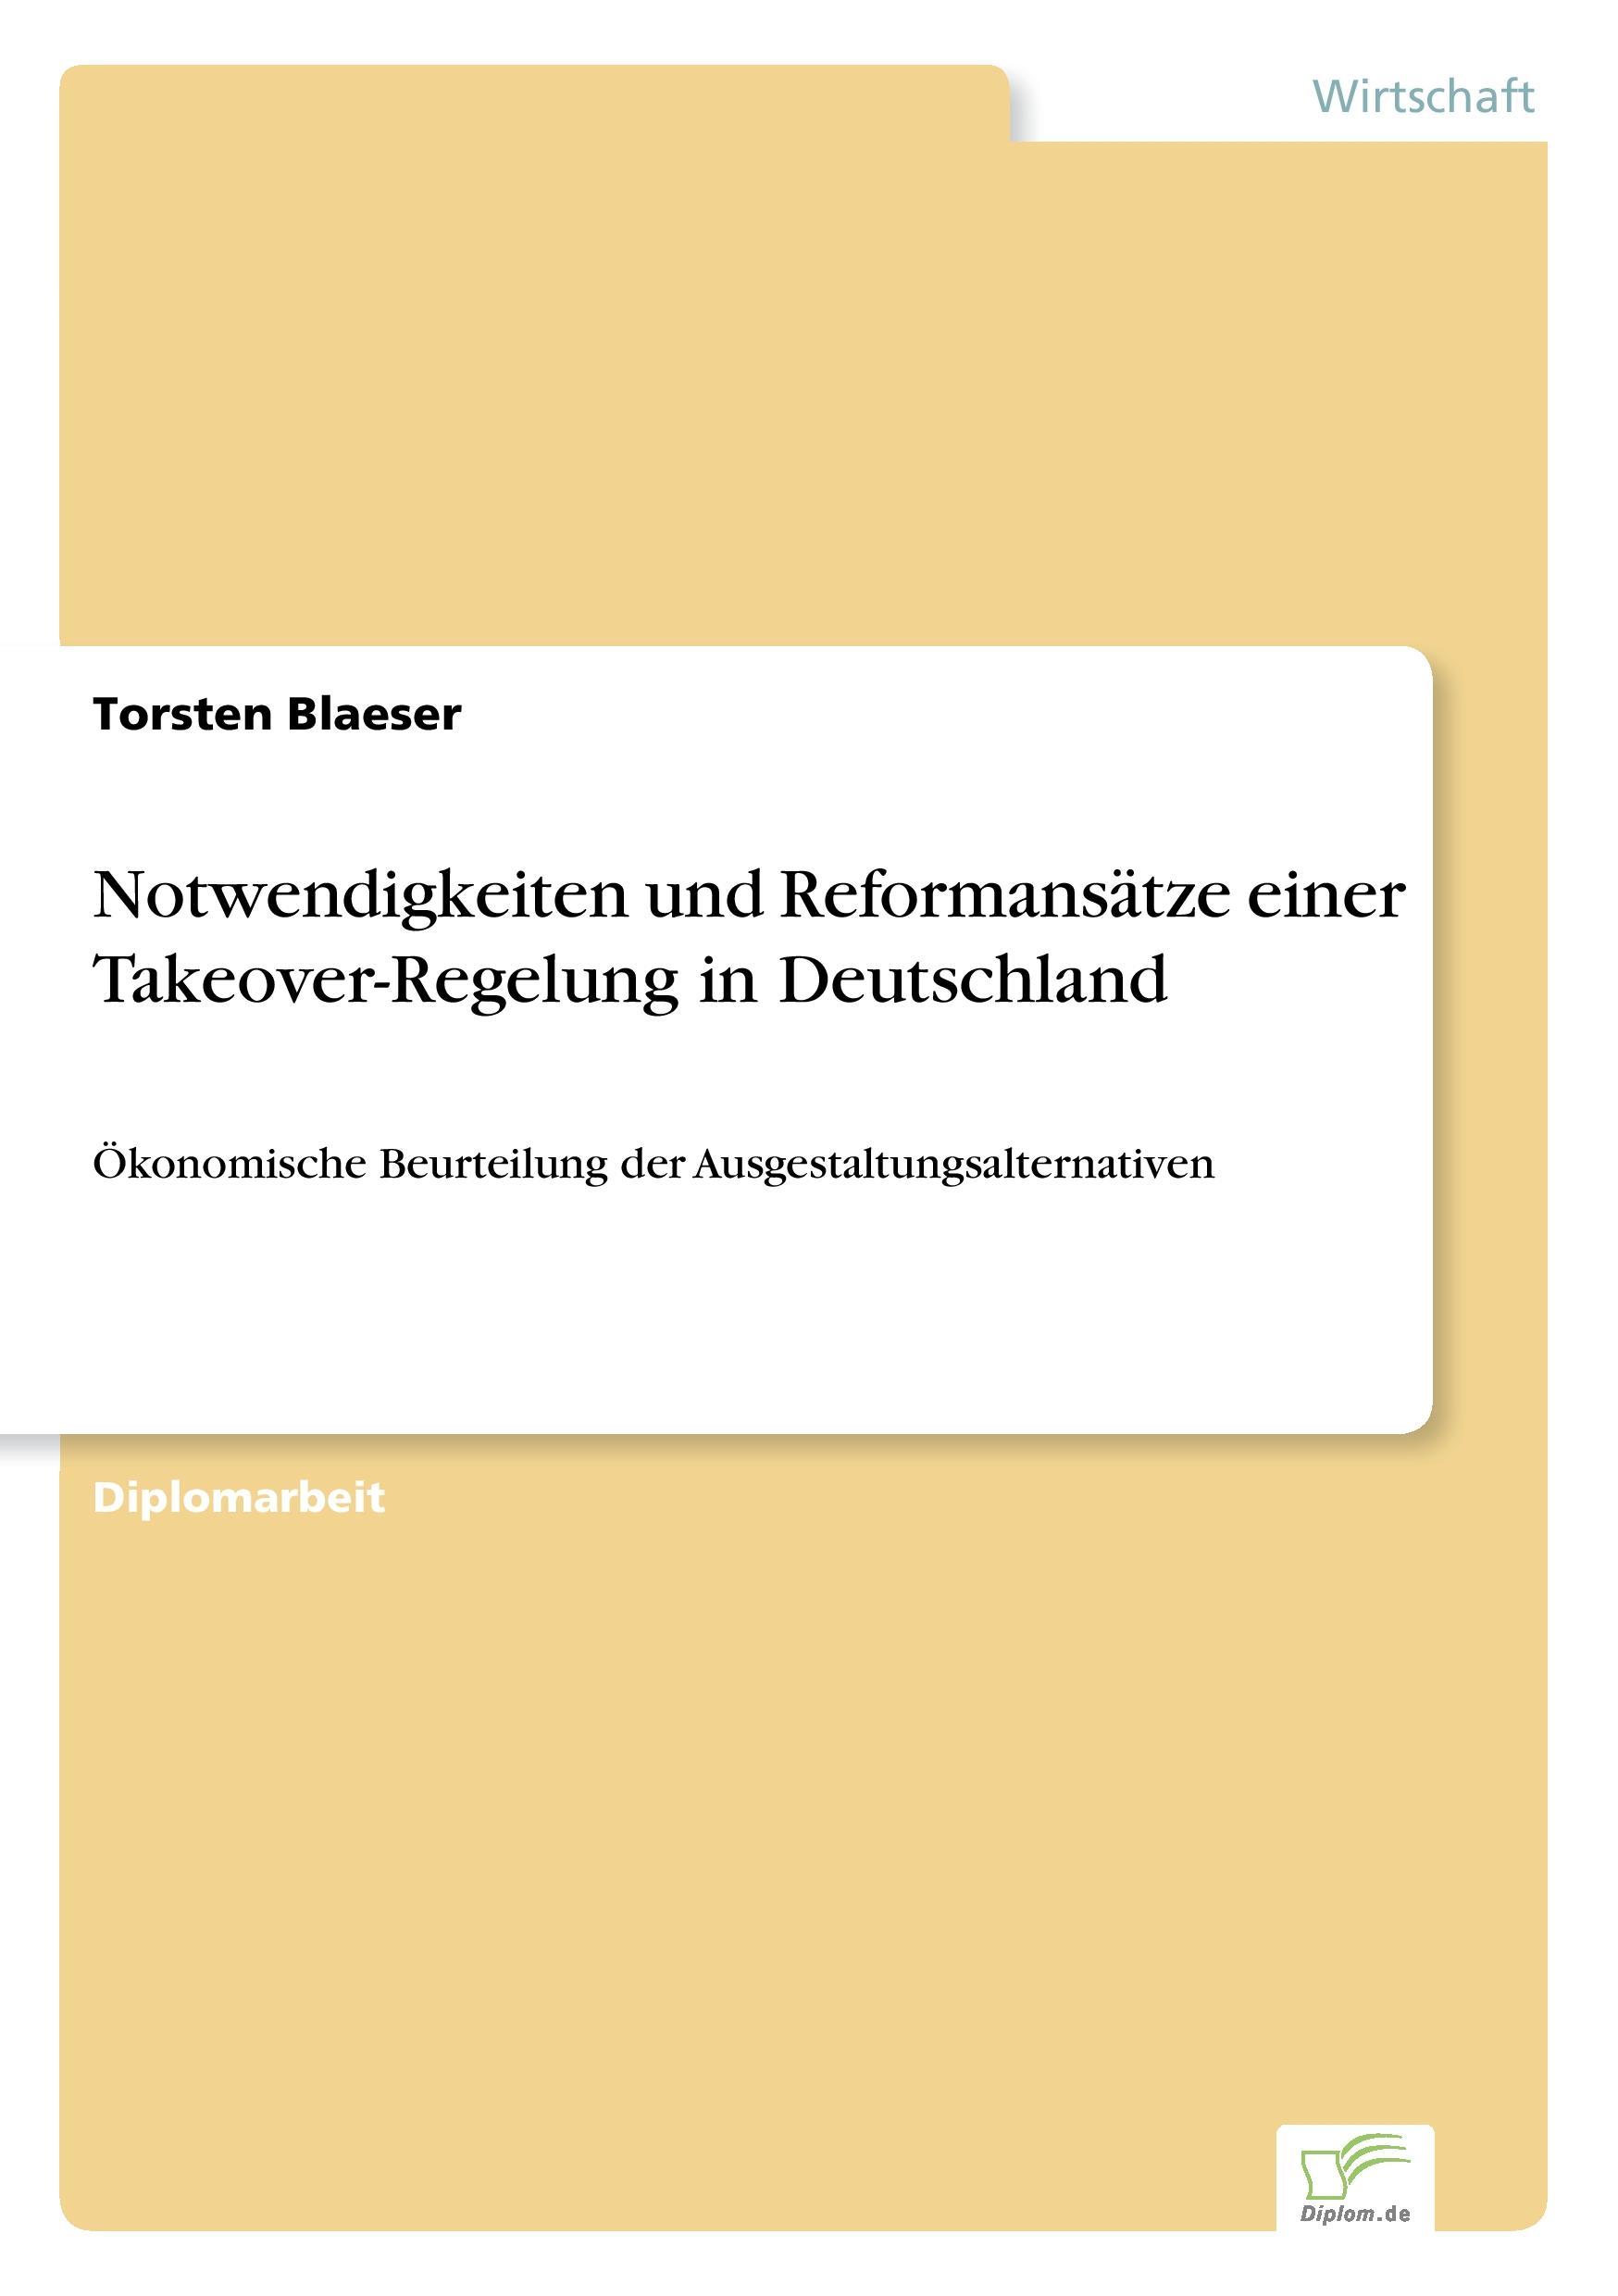 Notwendigkeiten und Reformansaetze einer Takeover-Regelung in Deutschland - Blaeser, Torsten